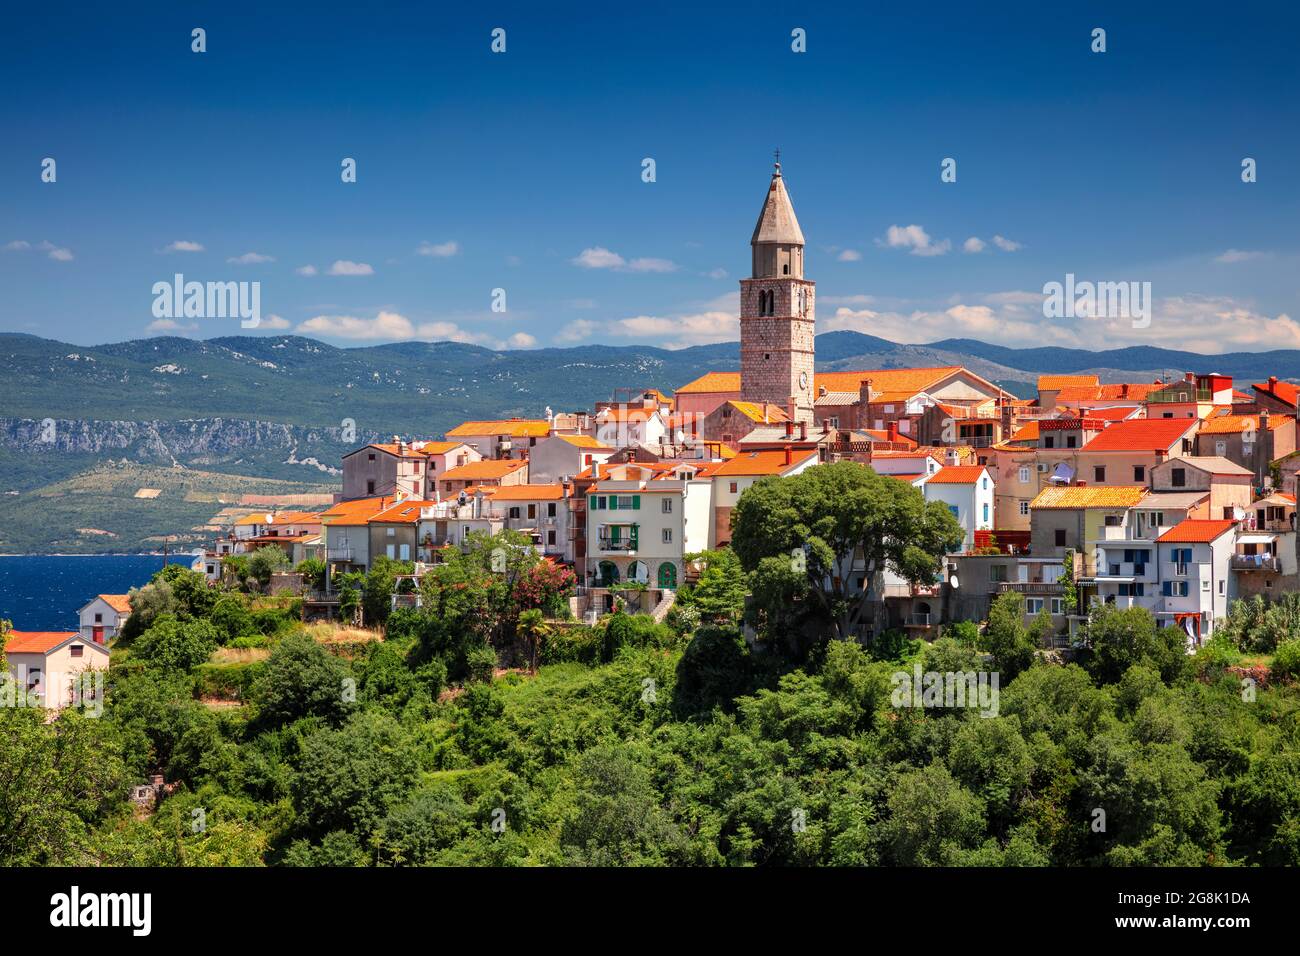 Vrbnik, Kroatien. Luftbild des berühmten Dorfes Vrbnik, Kroatien auf der Insel Krk an einem schönen Sommertag. Stockfoto